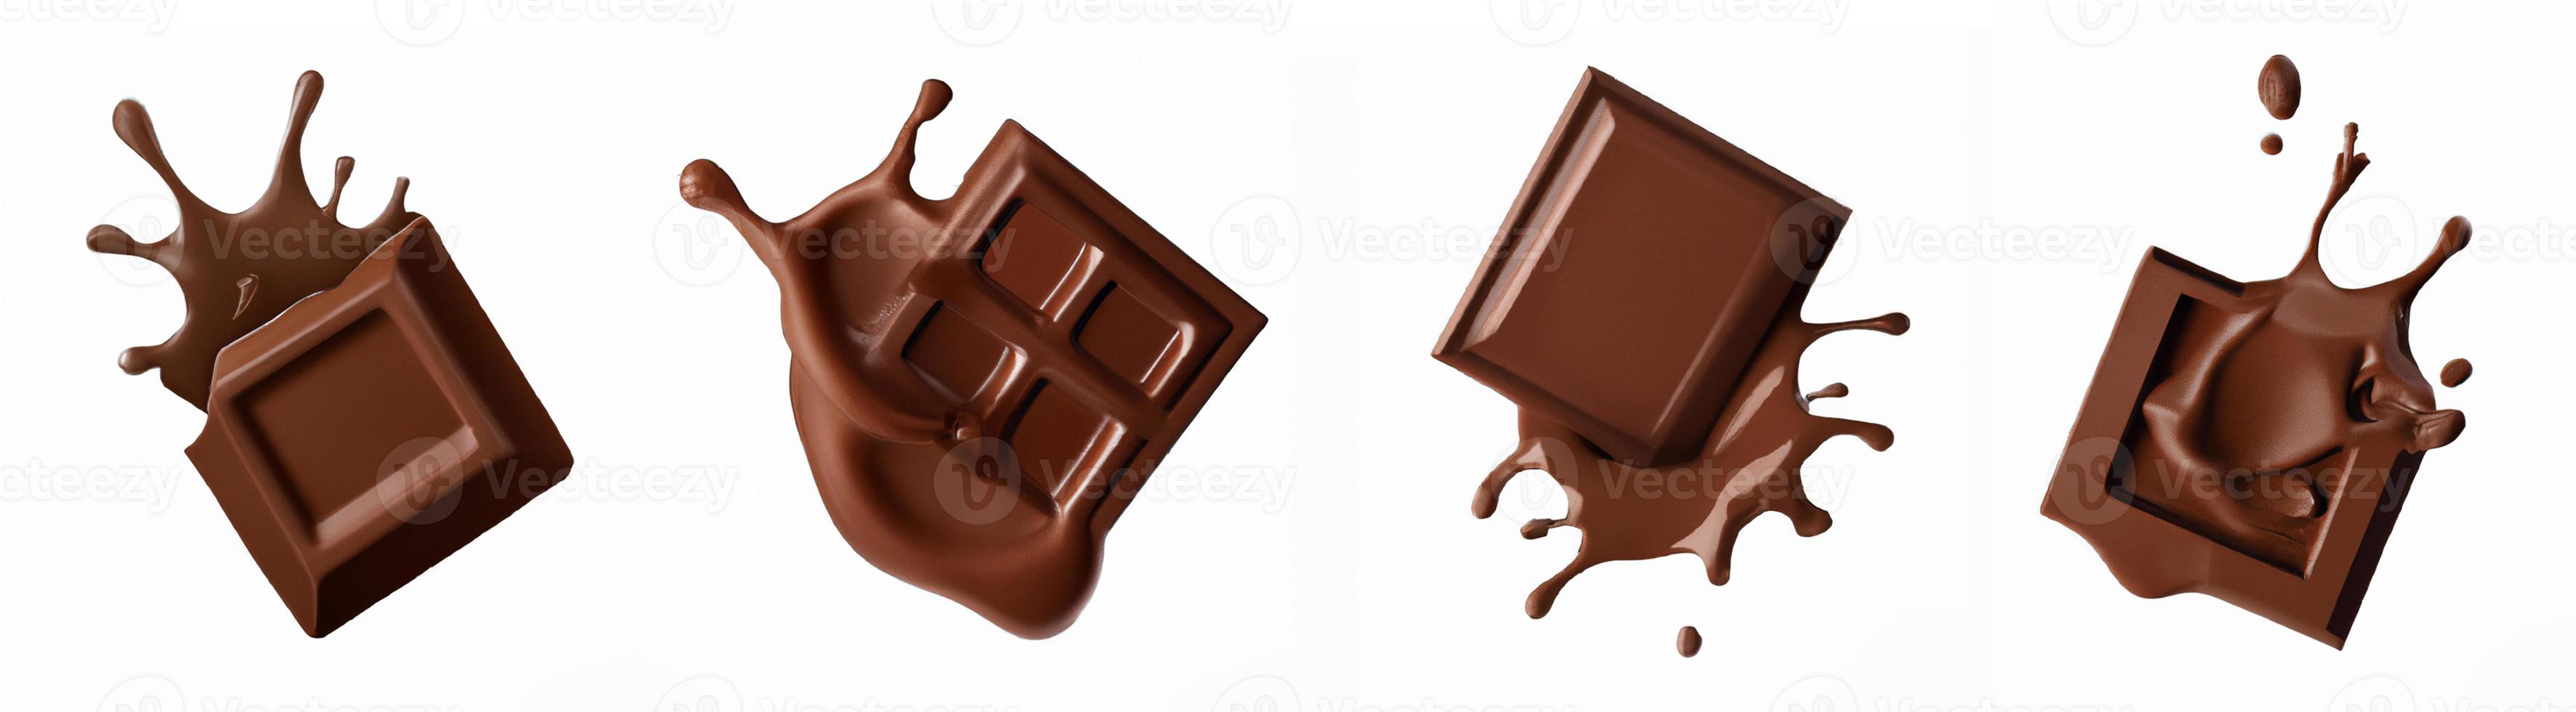 conjunto de respingos de chocolate. foto